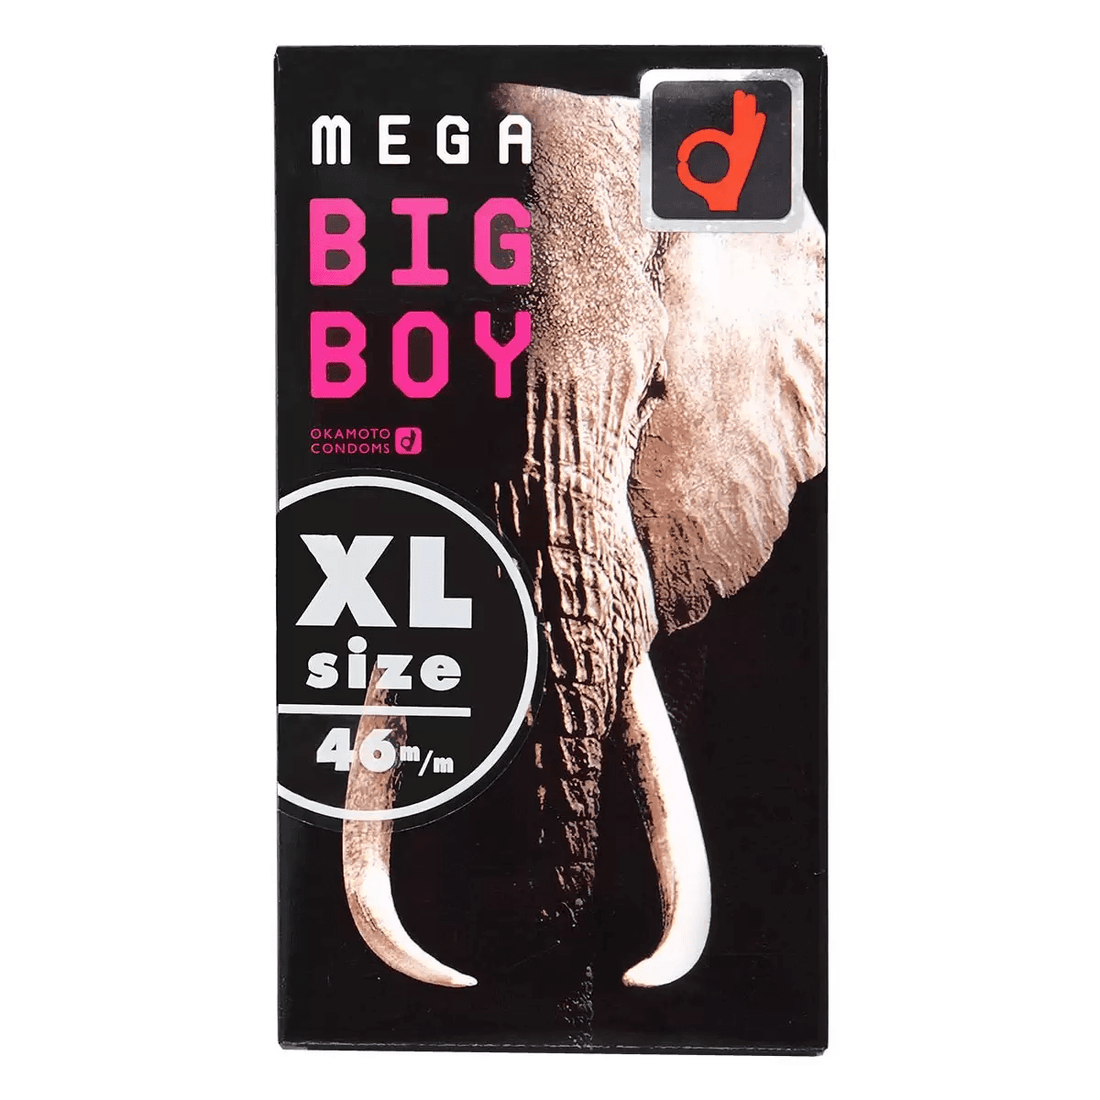 日本冈本Okamoto Mega Big Boy - XL 安全套12只装 - Premium 避孕套 from 冈本OKAMOTO - Just $19.99! Shop now at blissboxmall